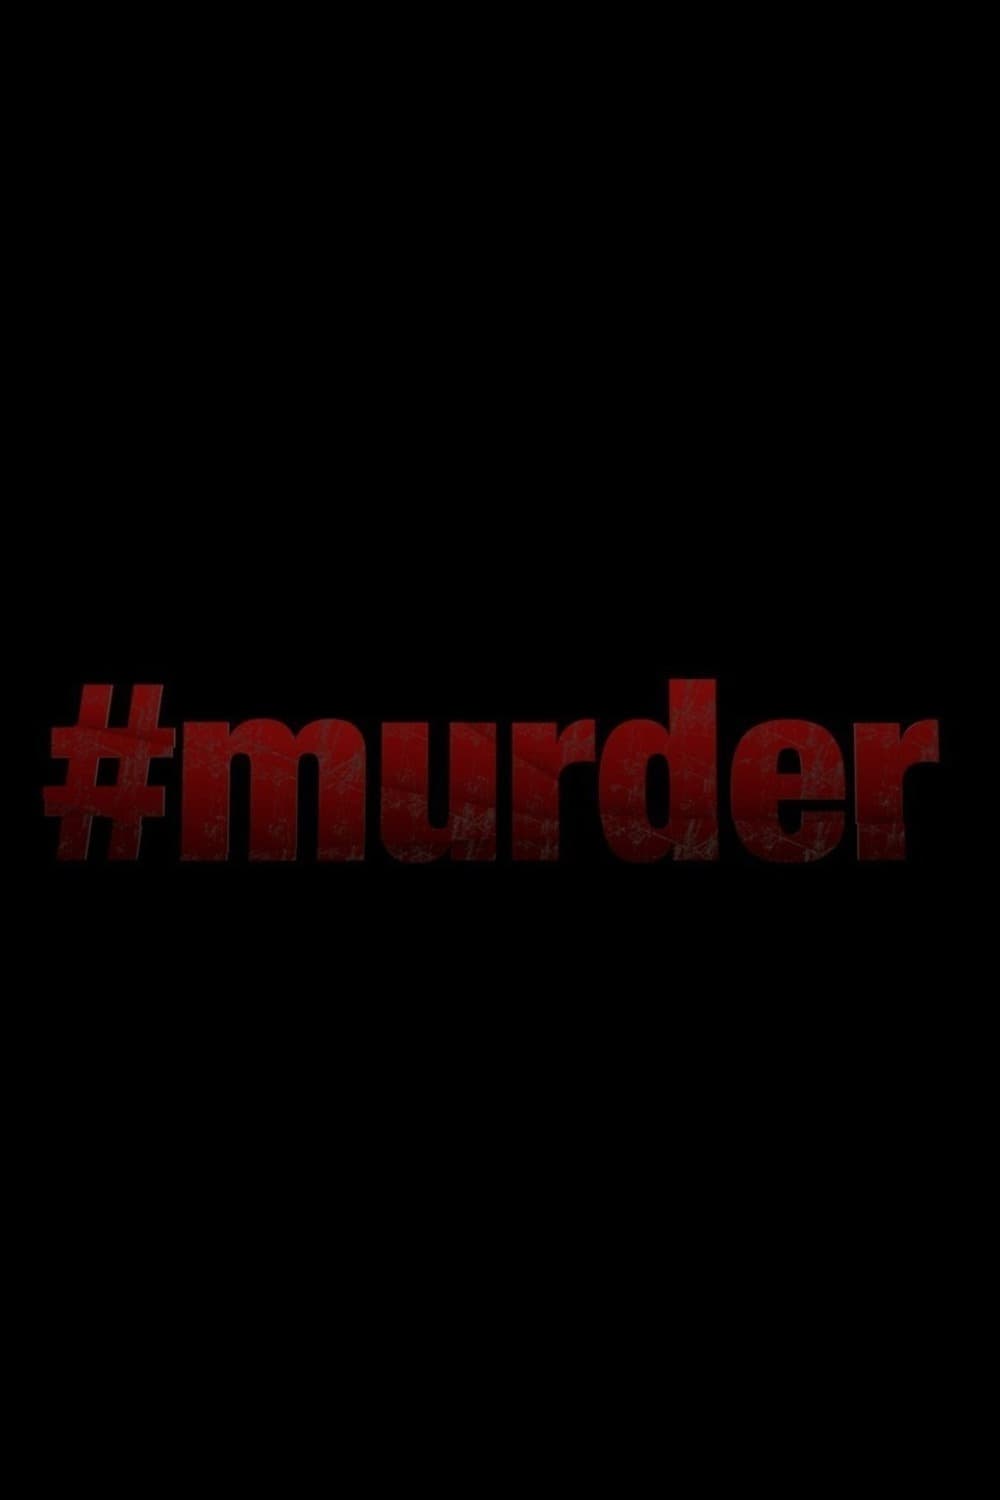 #Murder